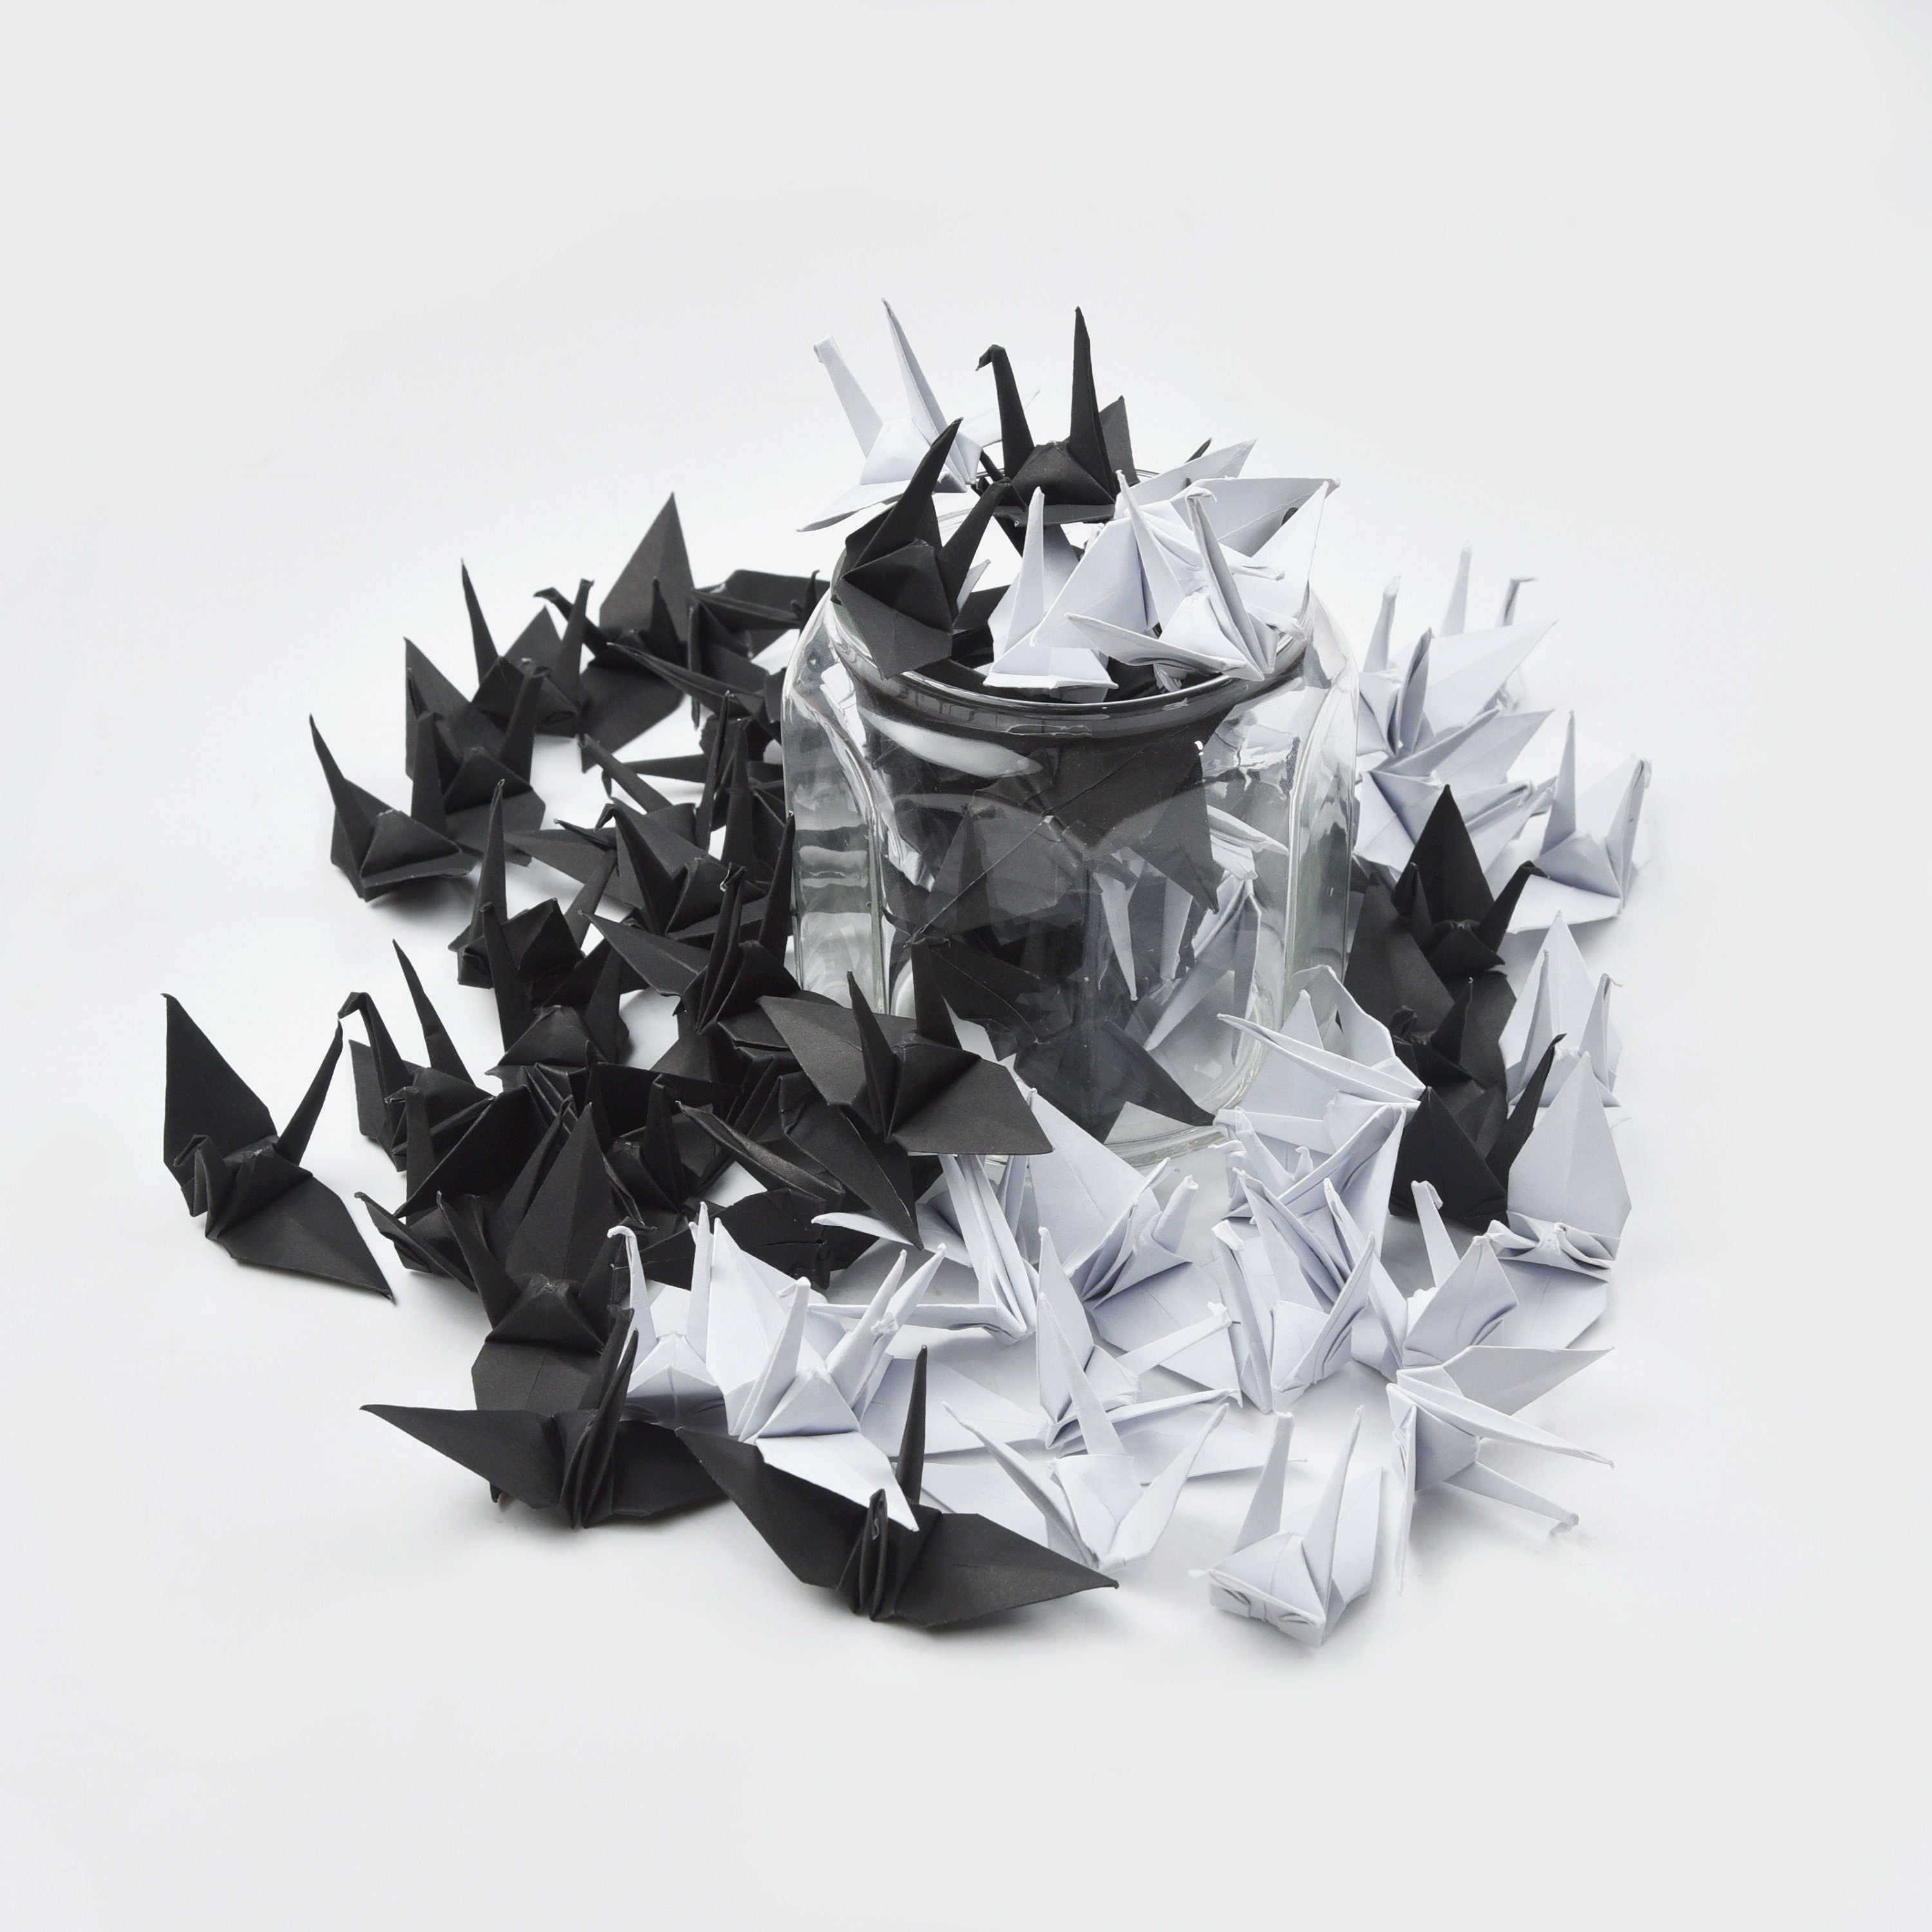 100 gru di carta origami - bianco e nero - 3x3 pollici - per decorazioni di nozze, regalo di anniversario, San Valentino, sfondo